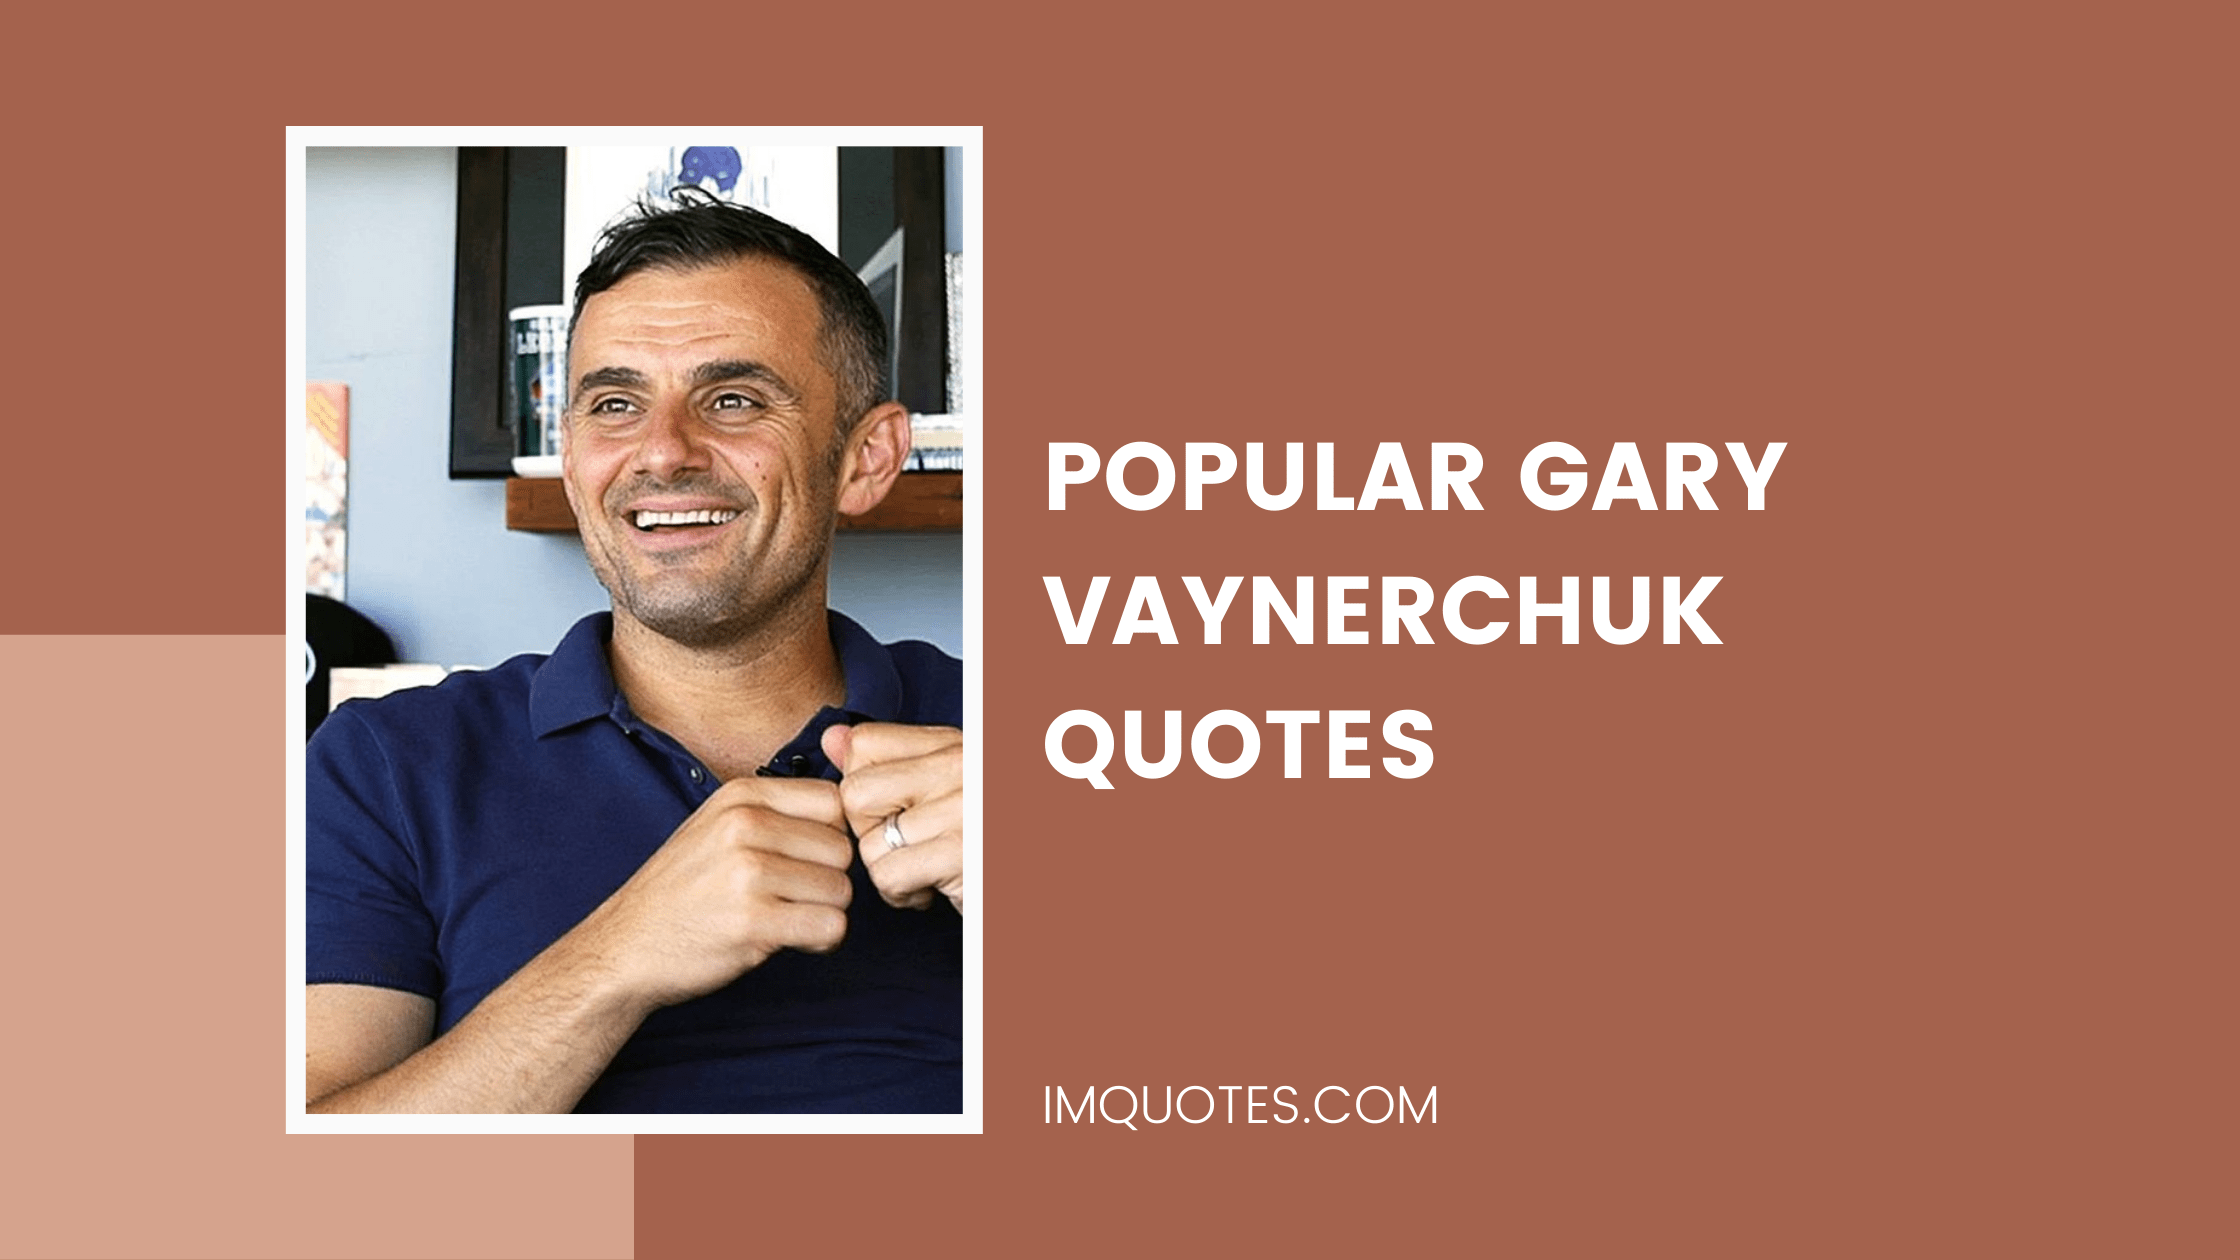 Popular Gary Vaynerchuk Quotes